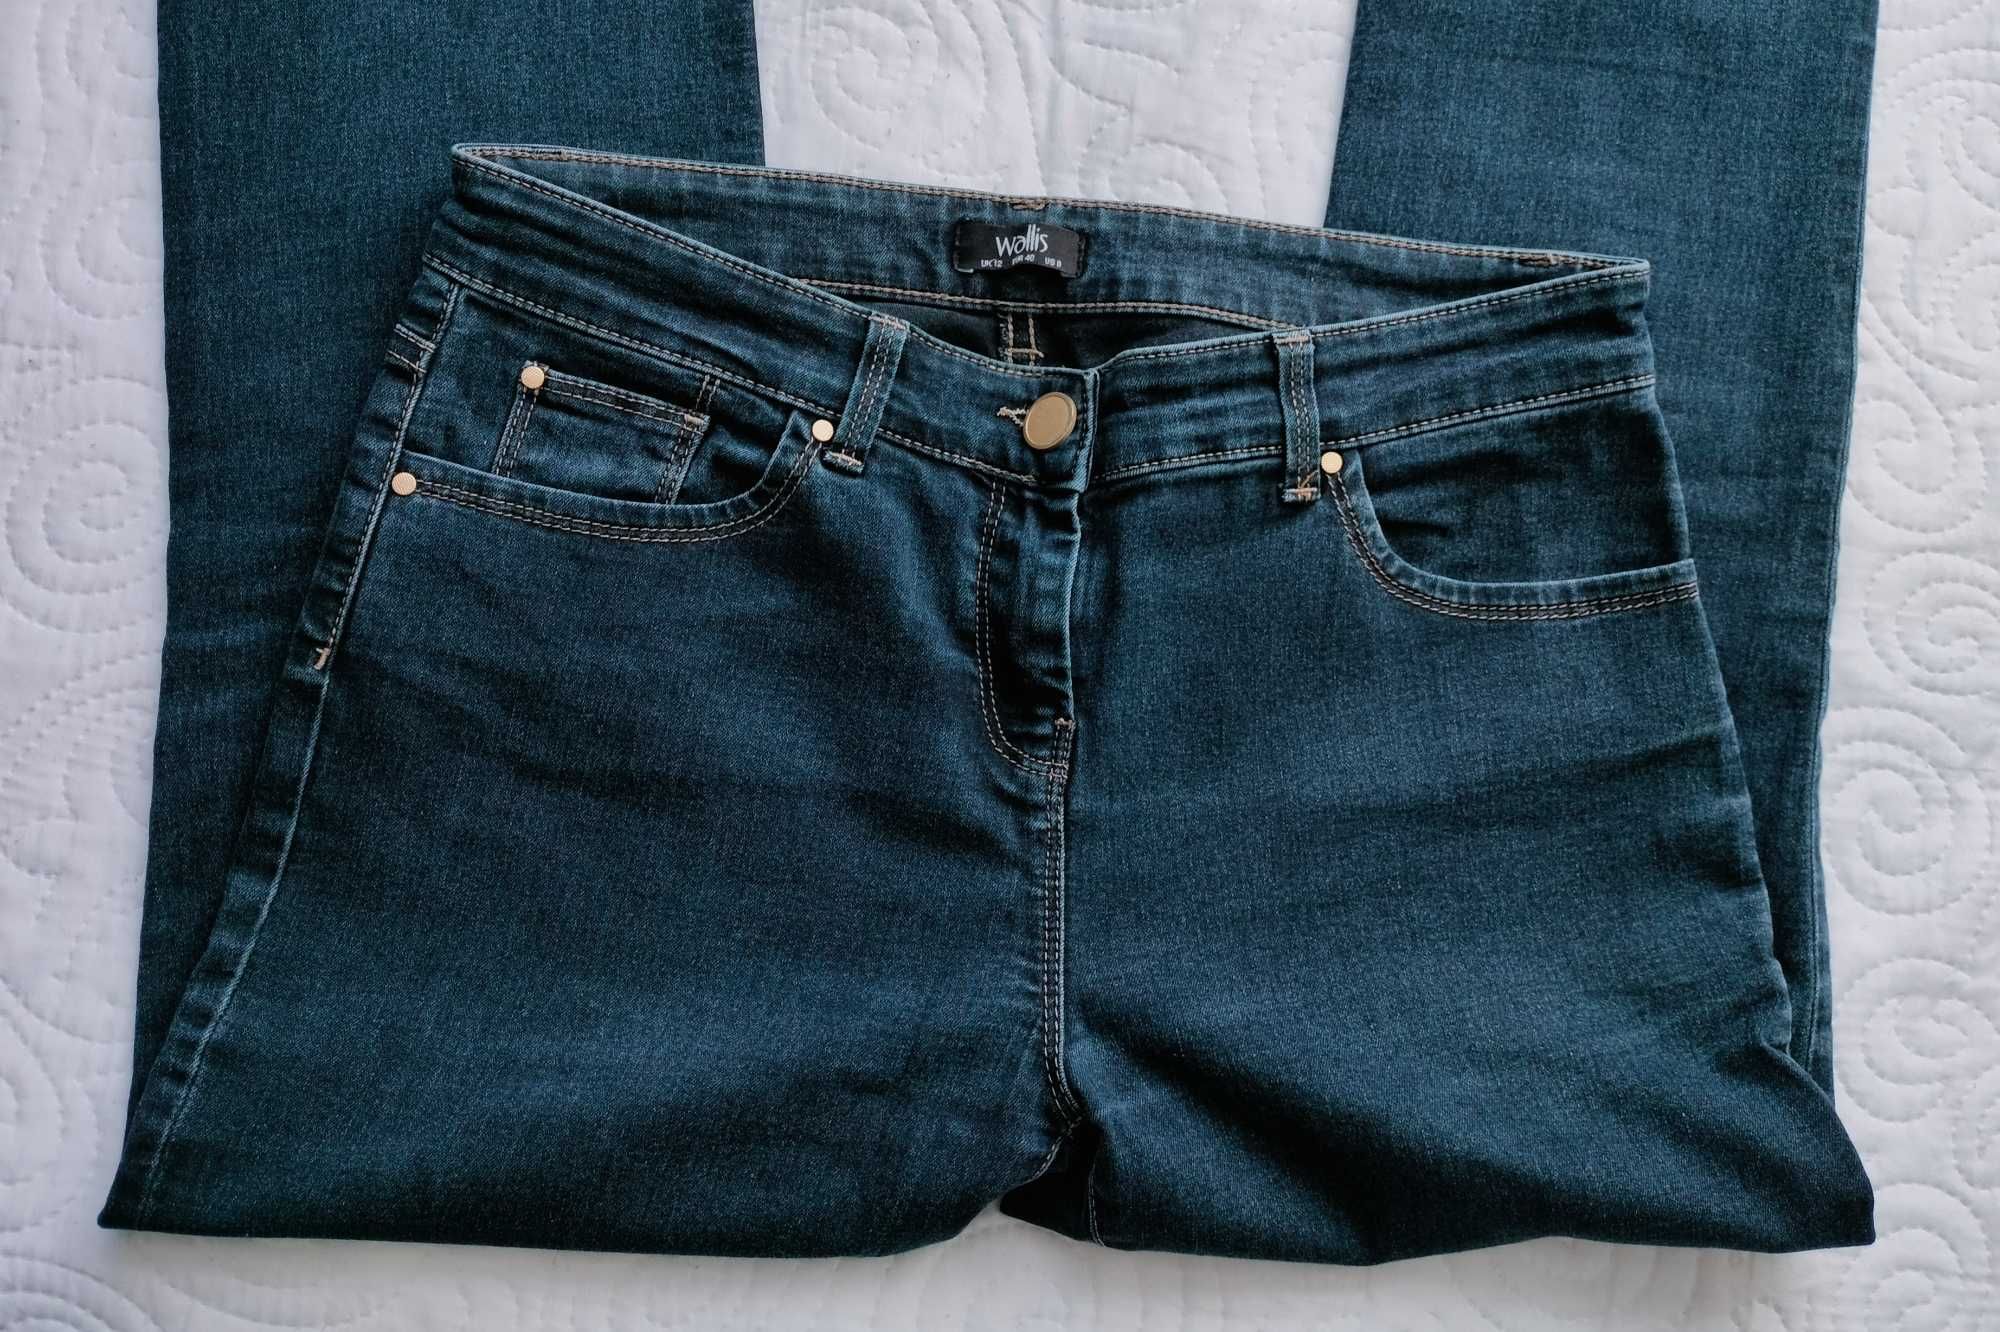 Spodnie dżinsowe, ciemne niebieskie, Wallis, rozmiar 40.